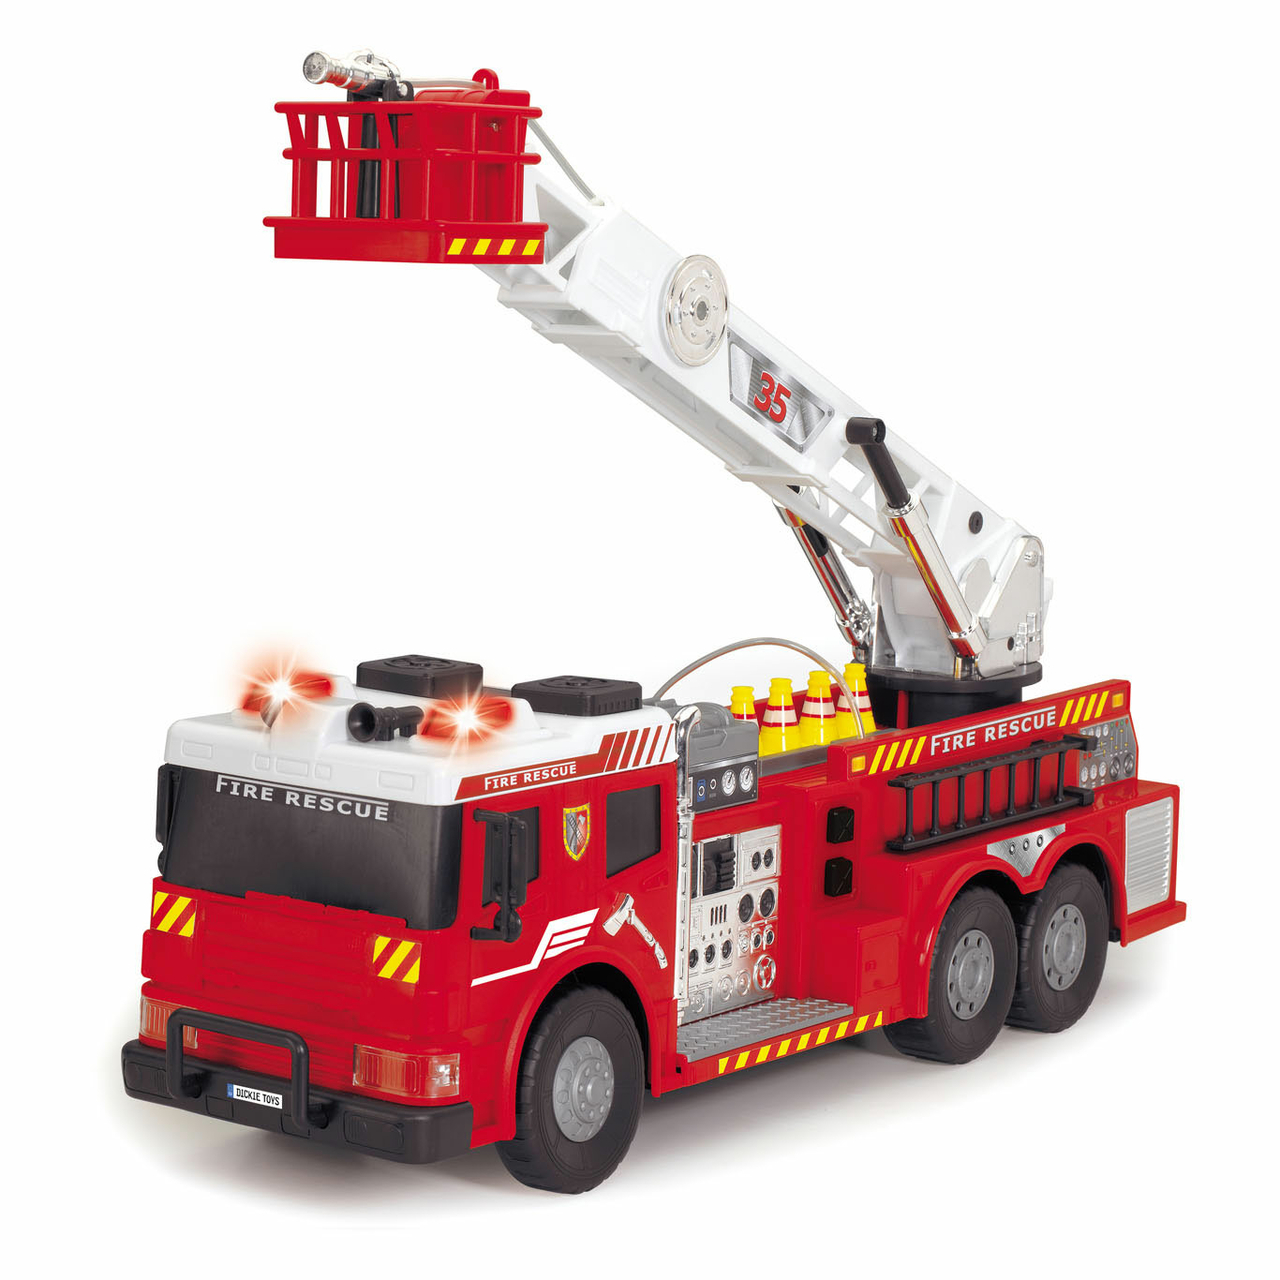 Caroline Onderhoud Rose kleur Dickie RC Brandweerwagen met Ladder en Waterspuit - Het Speelgoedpaleis